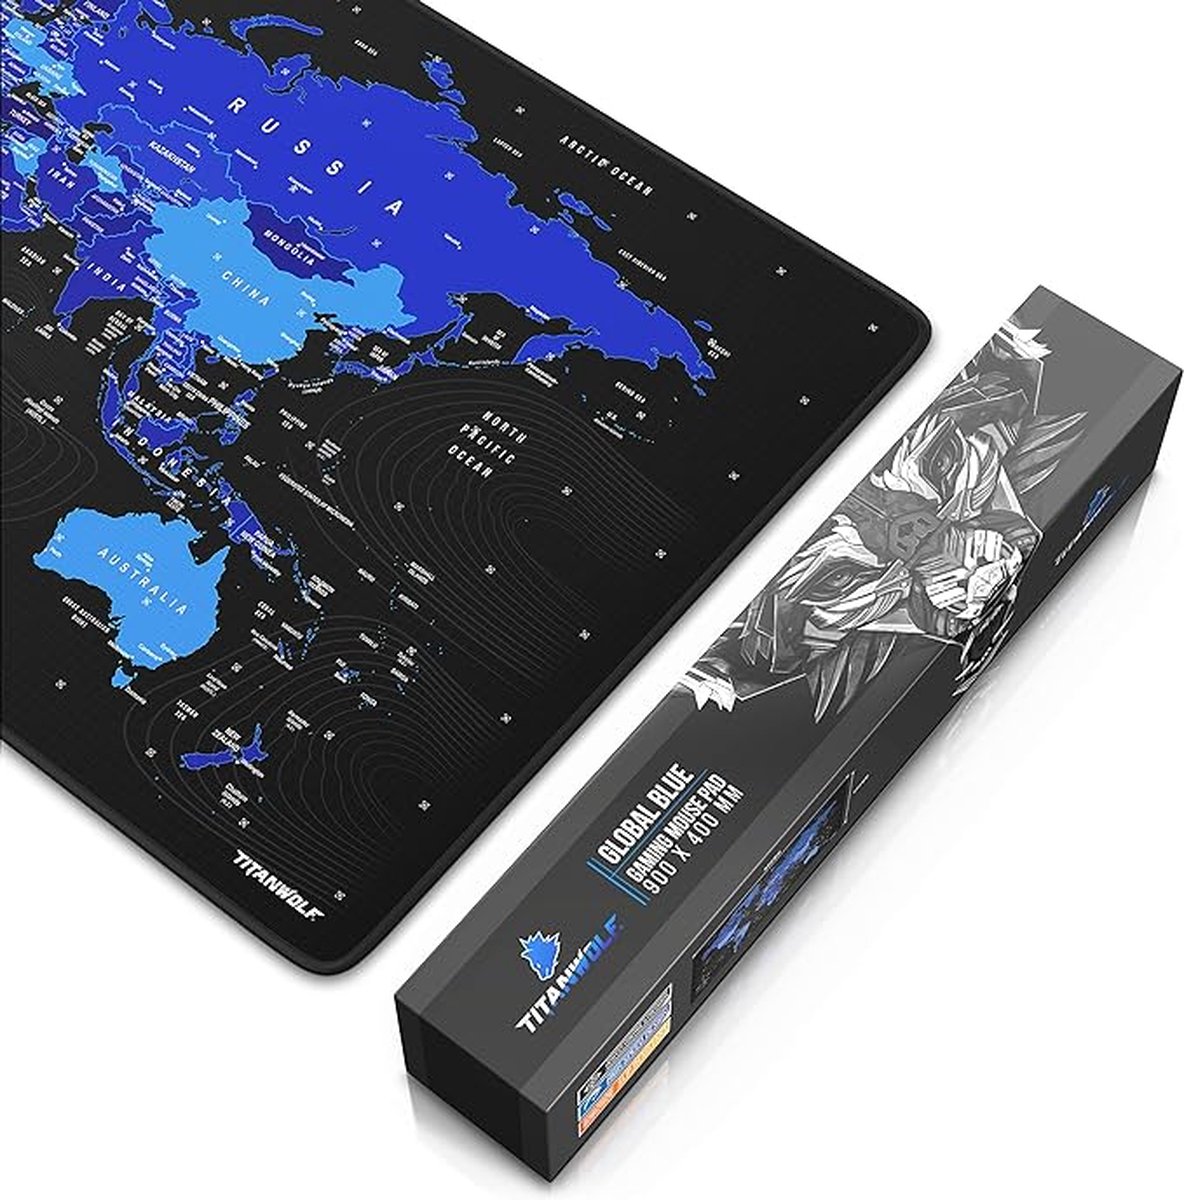 XXL gaming muismat 900x400 mm - tafelmat muismat groot - precisie en snelheid - rubberen basis - antislip duurzaam waterafstotend - wereldkaart zwart blauw